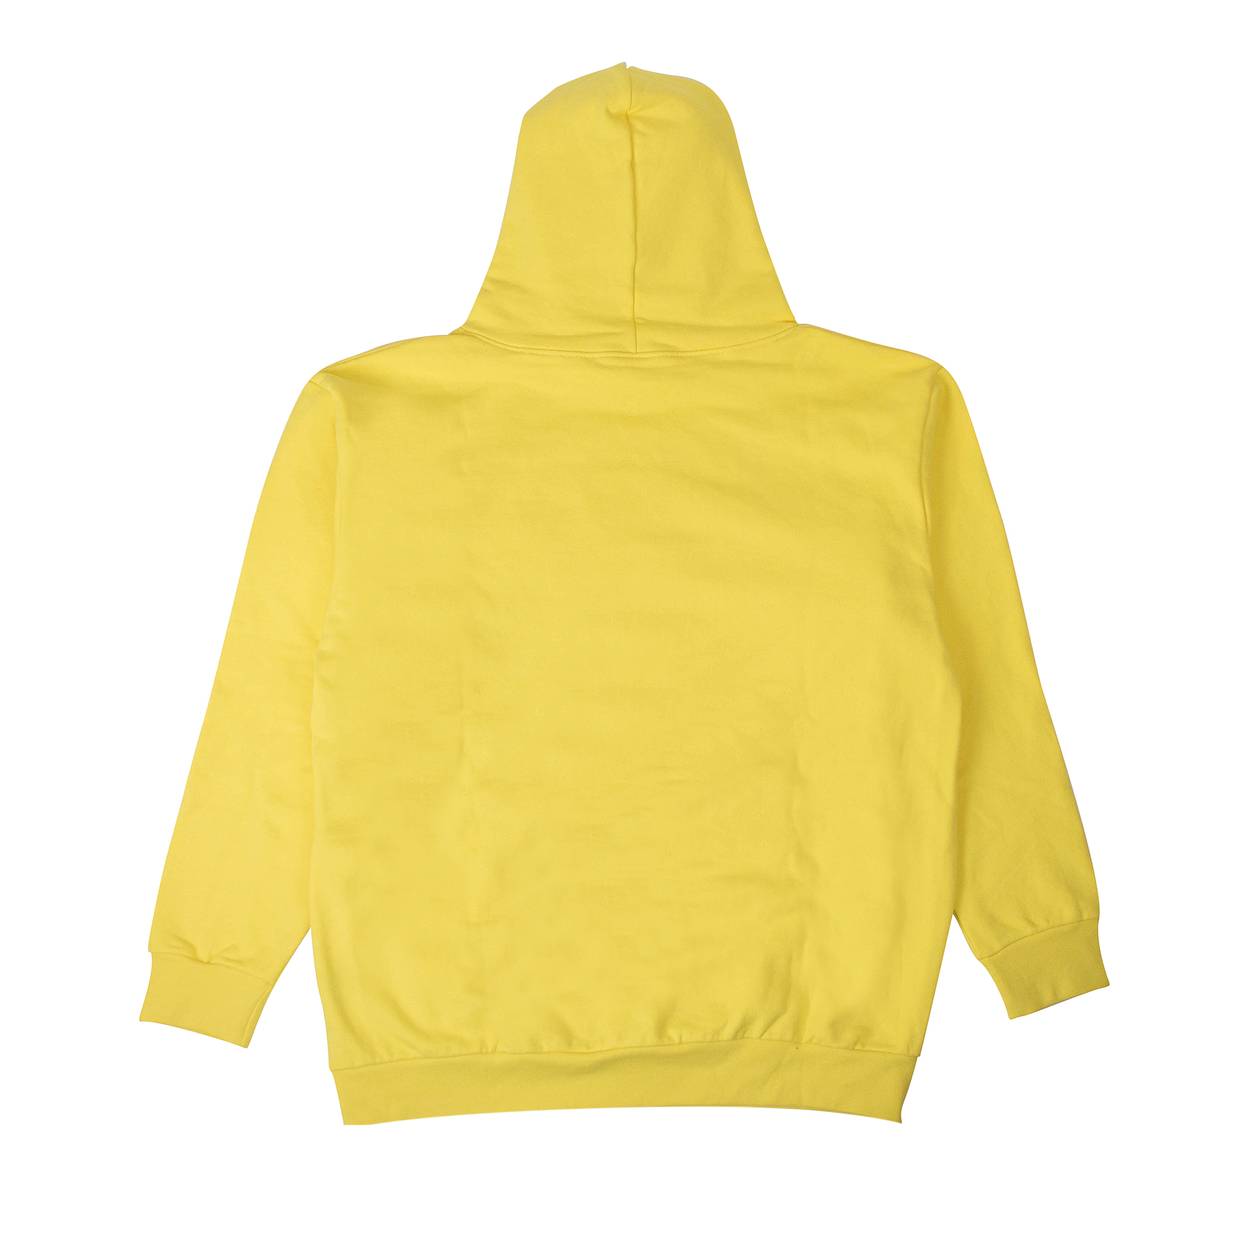 Sp5der Logo Hoodie Sweatshirt 'Yellow' - Sp5der - 2406 100000106LHS ...